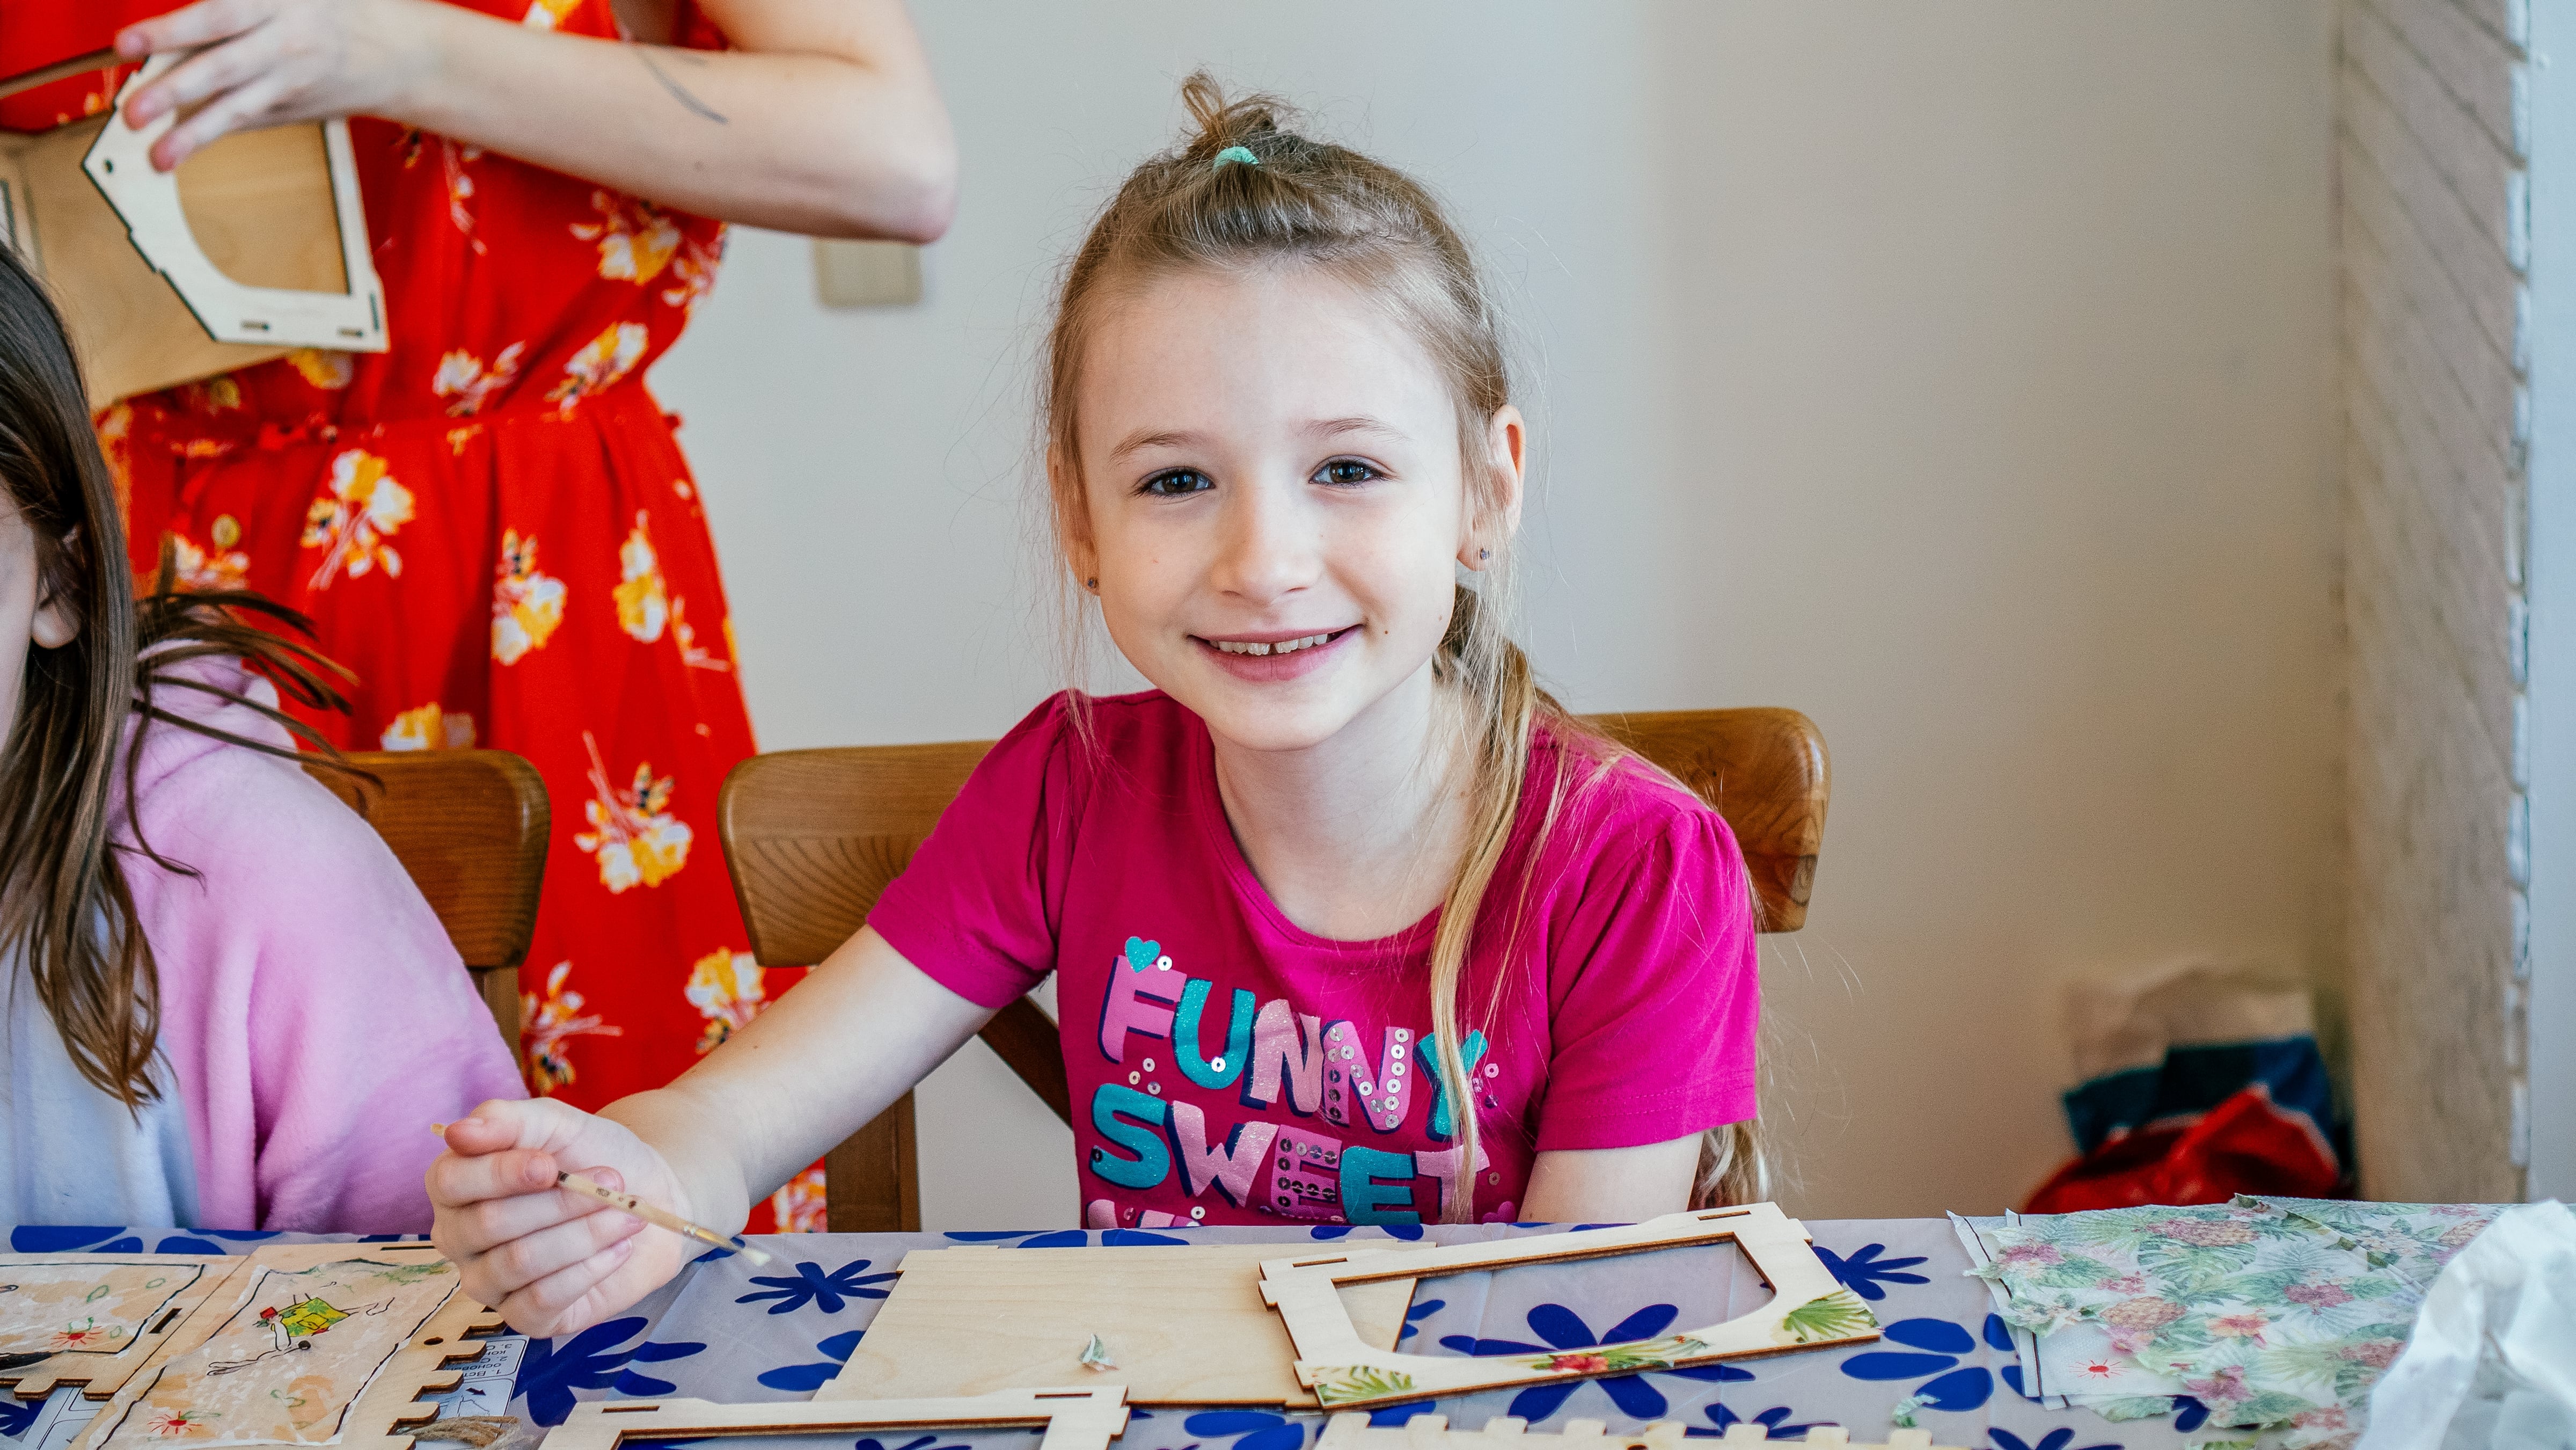 «Творческие каникулы для девочек Little Stars» – лагерь с бассейном, Санкт-Петербург, д. Марьино. Путевки в детский лагерь на 2023 год, фото обучения 5